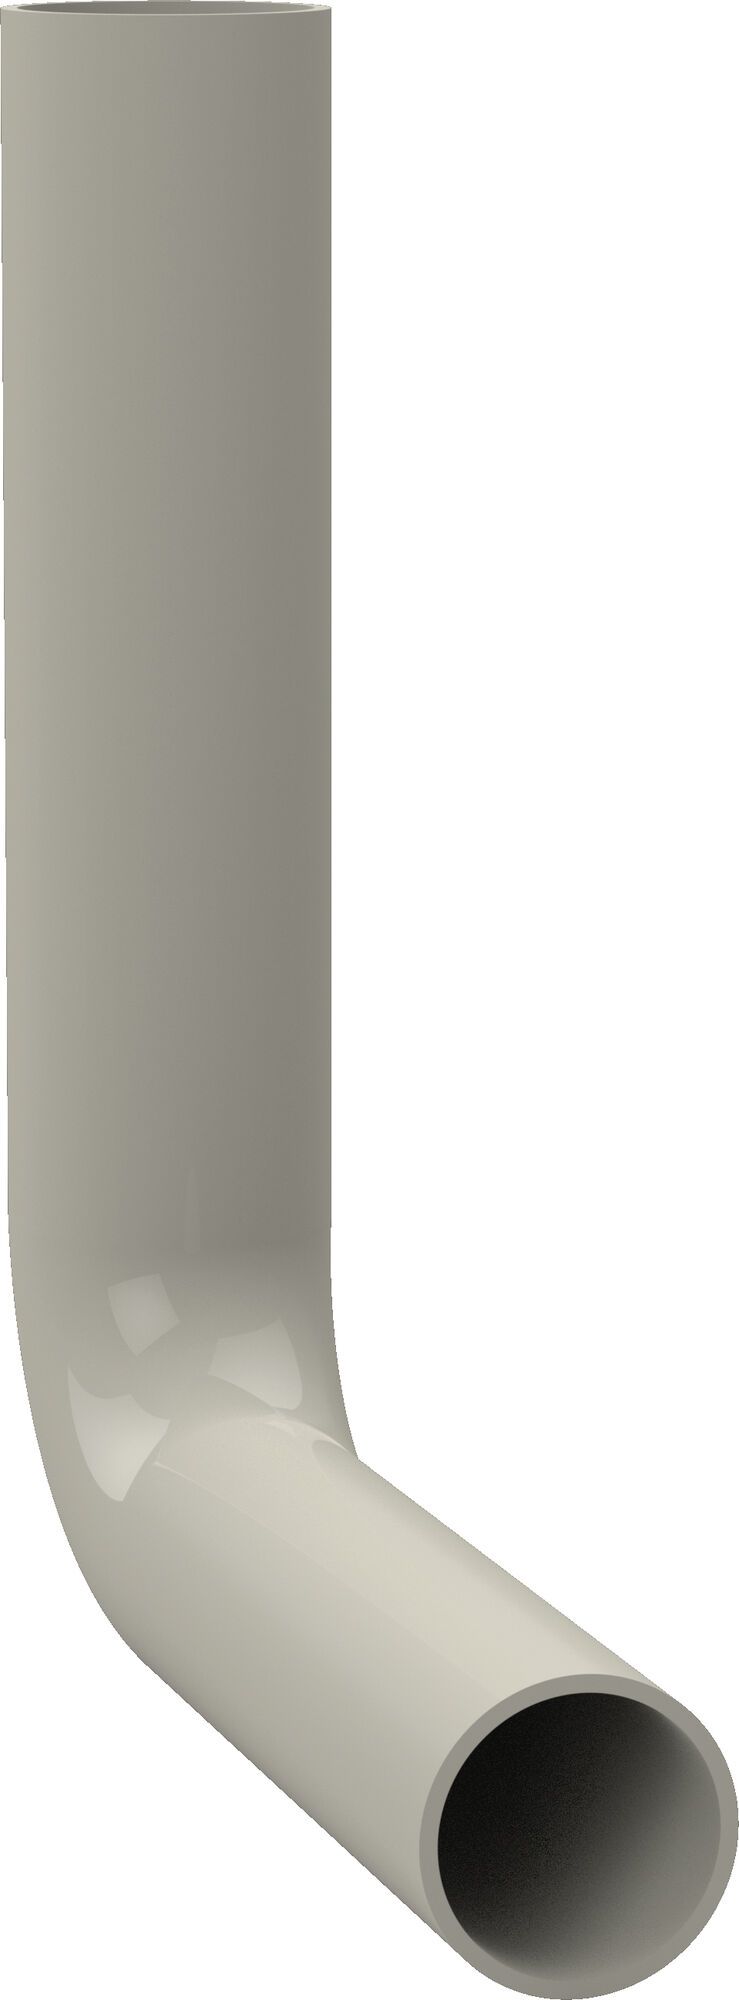 Flush pipe elbow, 230 x 210 mm, pergamon